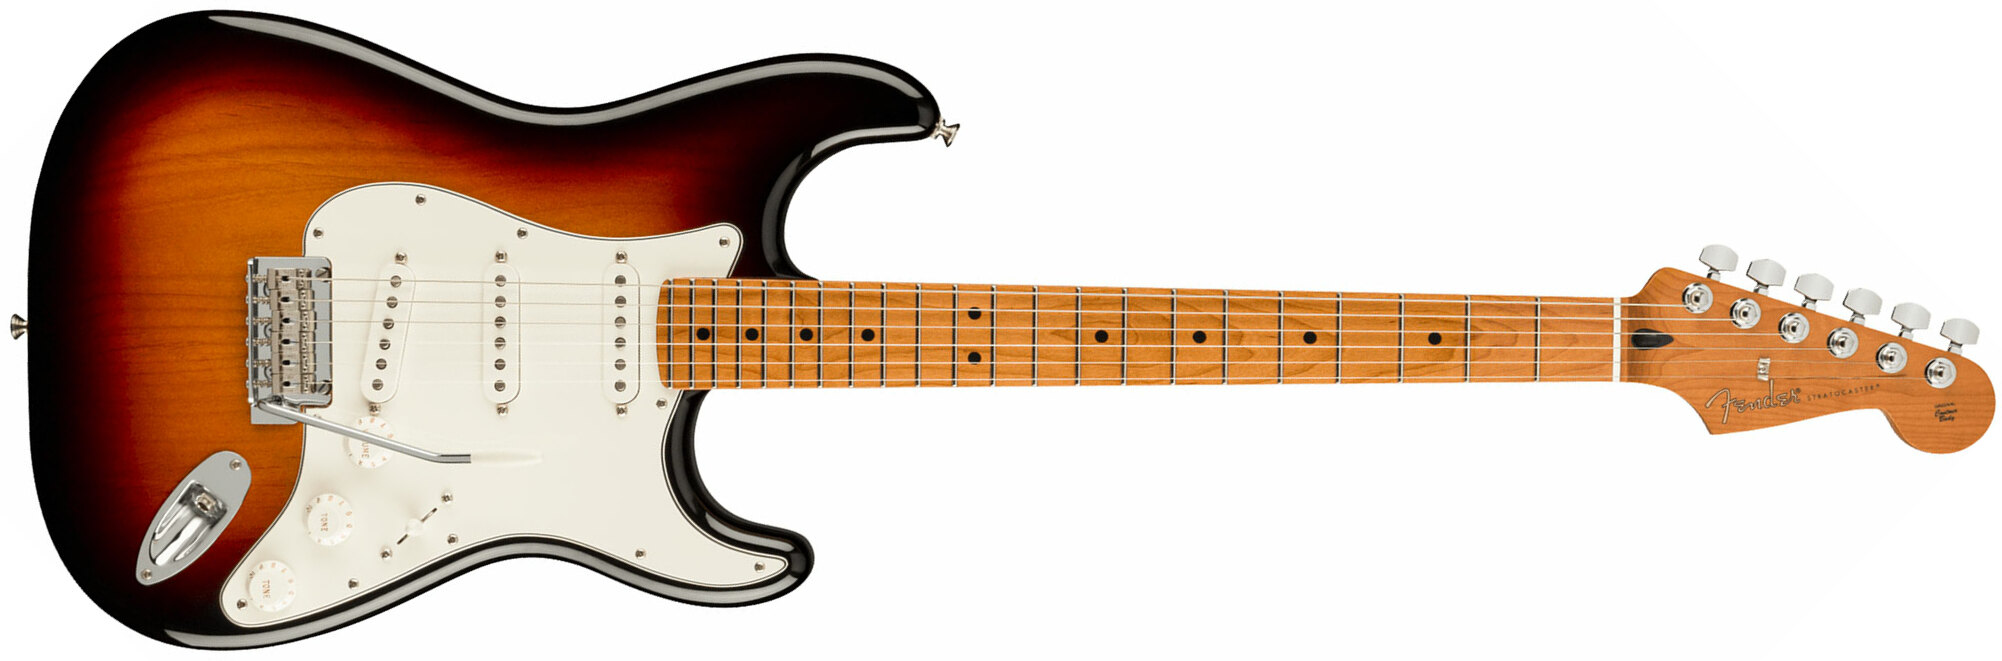 Fender Strat Player Roasted Maple Neck Ltd Mex 3s Trem Mn - 3 Color Sunburst - Guitare Électrique Forme Str - Main picture